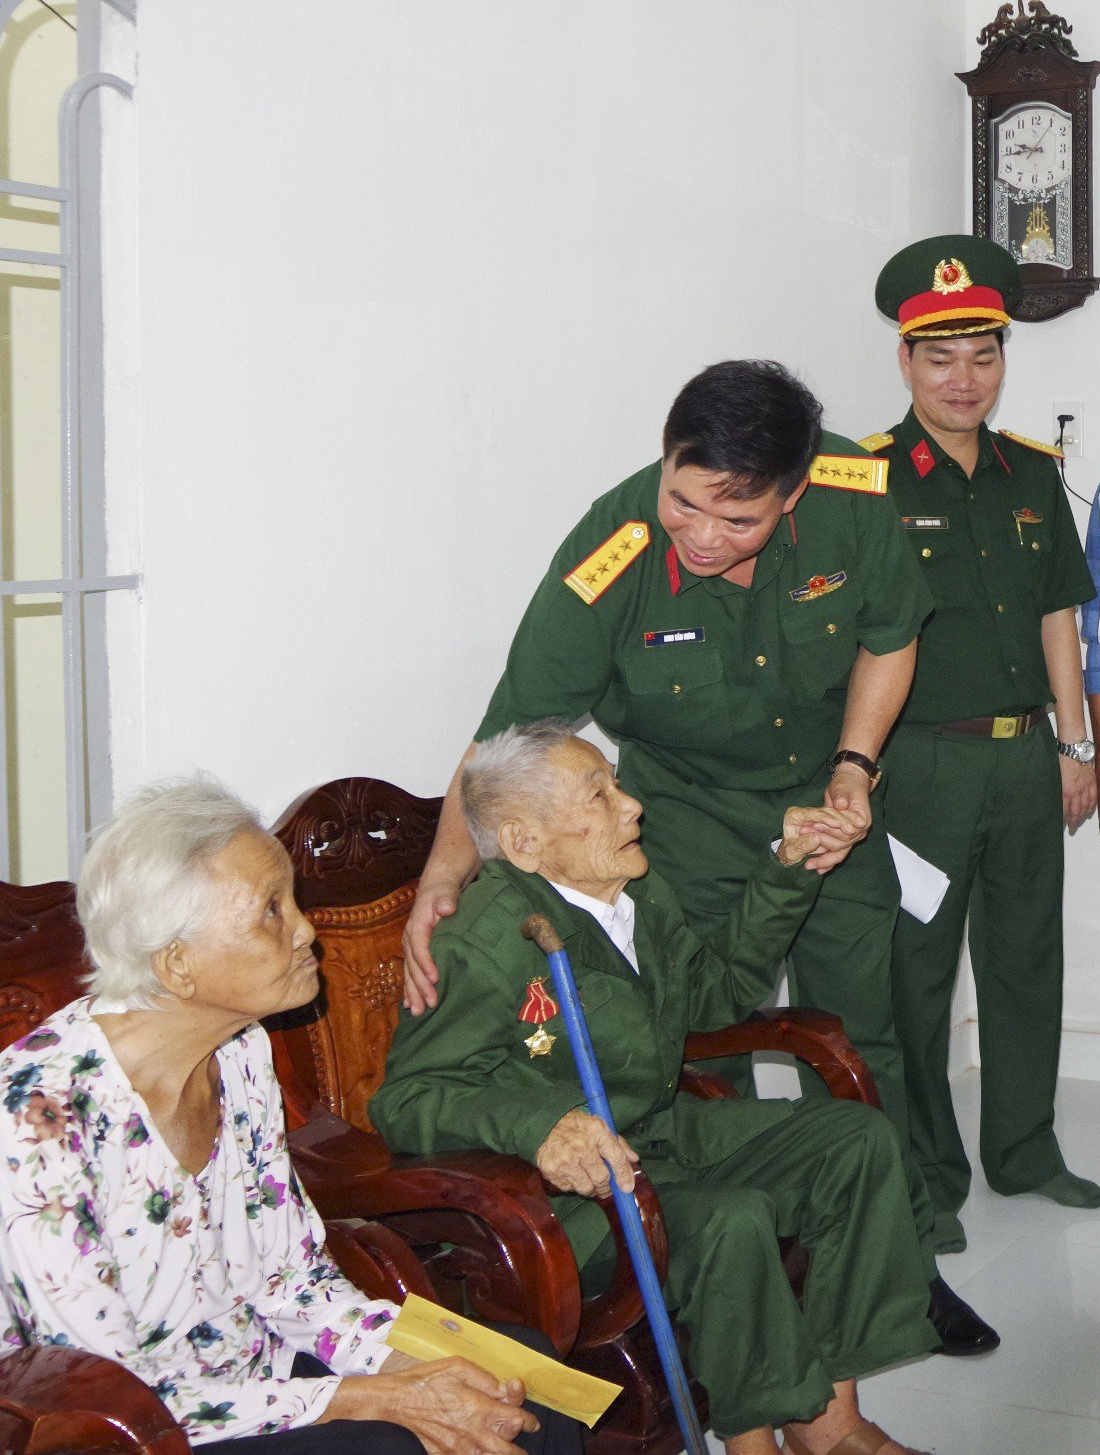 Đại tá Đinh Văn Hưng chia sẻ niềm vui cùng ông Lê Văn Quyền trong căn nhà mới.
